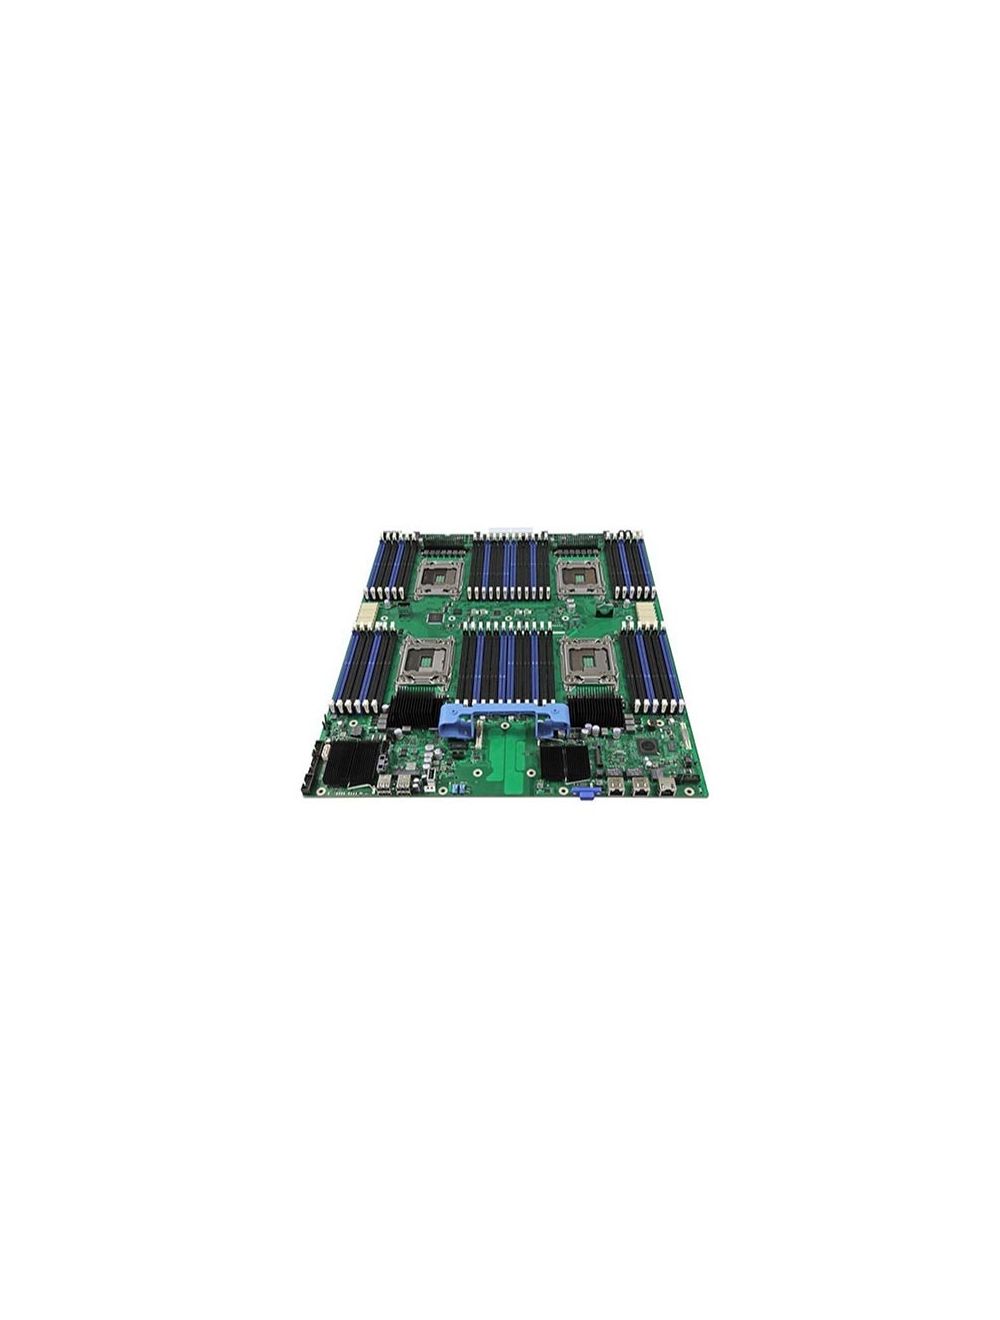 868120-001 | HPE Proliant Xl260a Gen9 Server